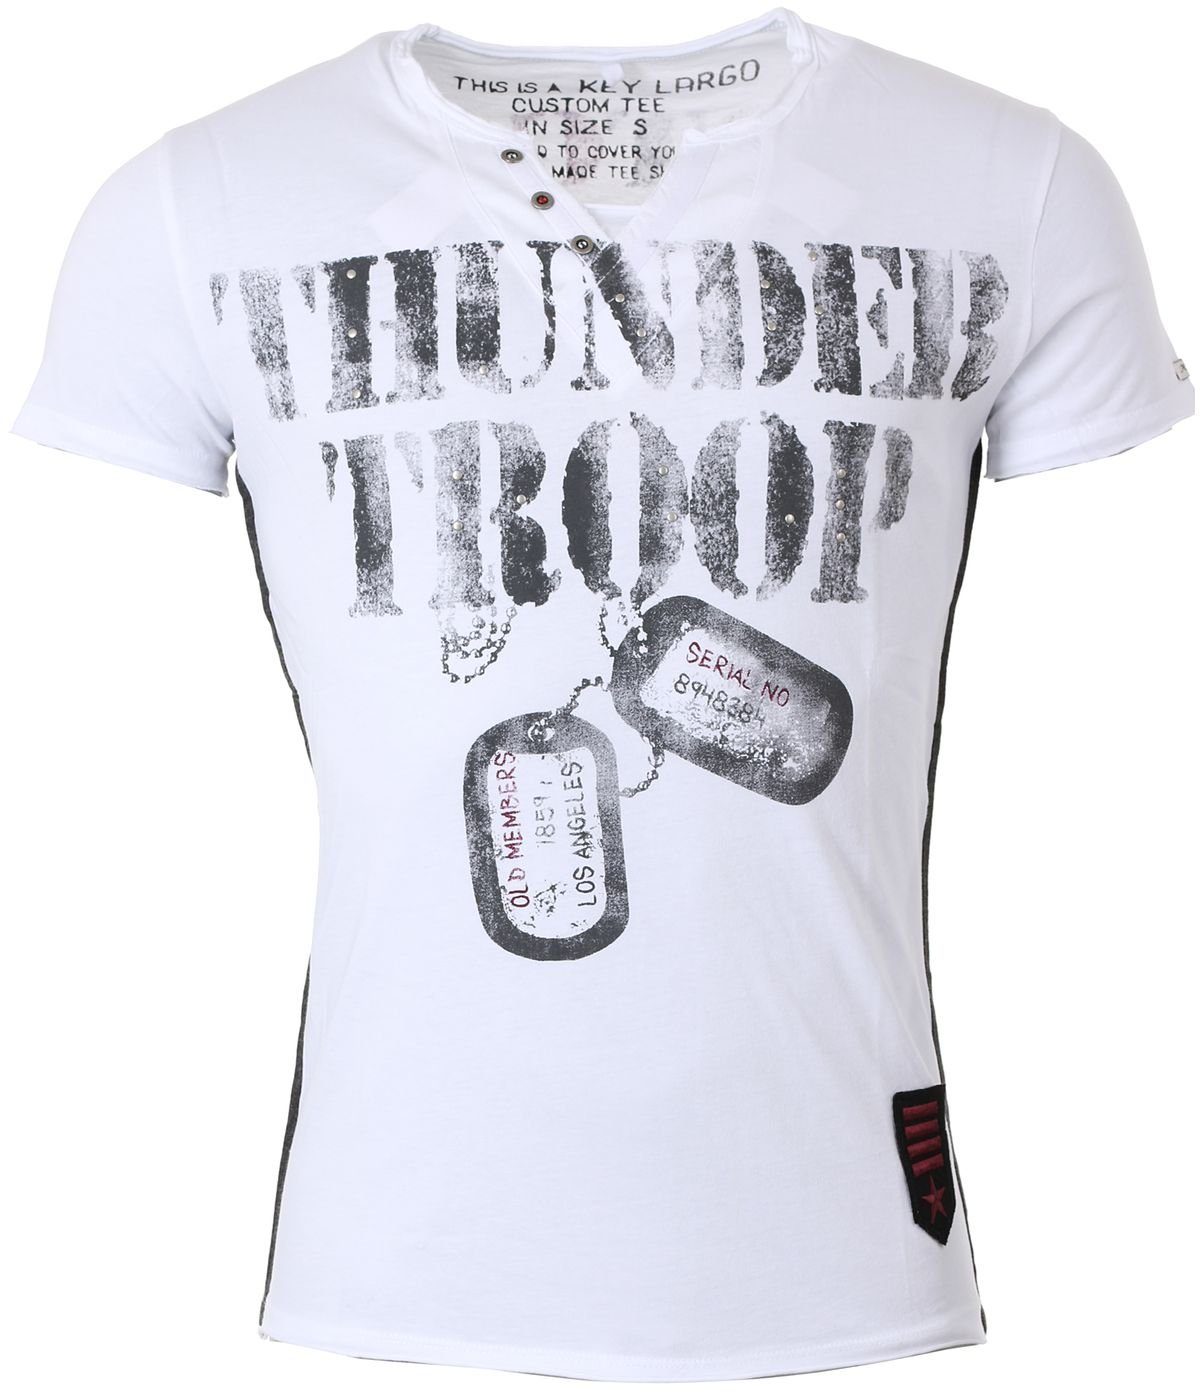 Key Largo T-Shirt für Herren Thunder Troop button Army Print Motiv vintage Look MT00114 V-Auschnitt bedruckt kurzarm slim fit Weiß